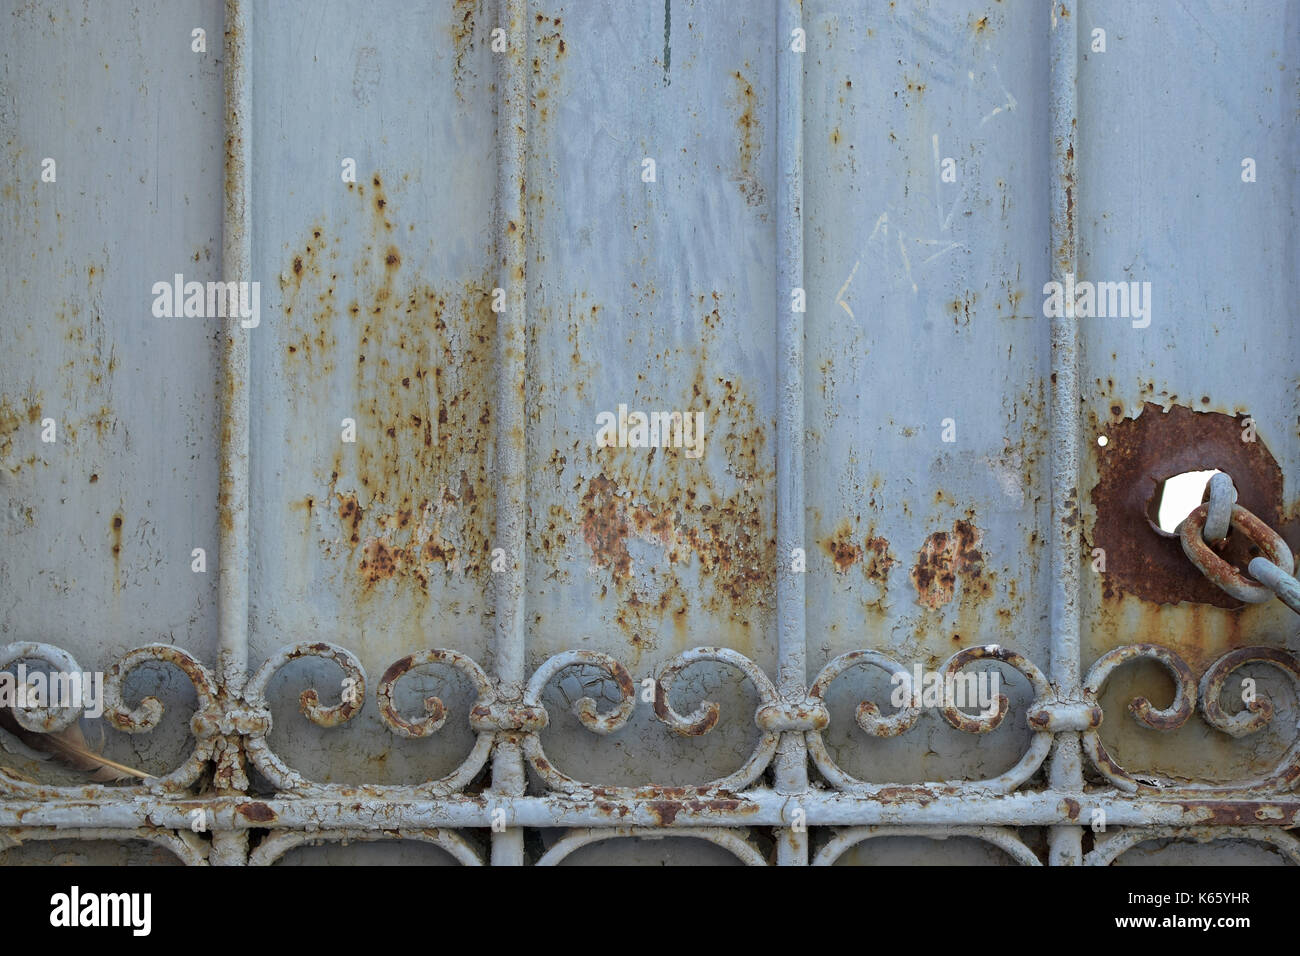 Porte de fer métal rouillé surmonté de texture de fond. Banque D'Images